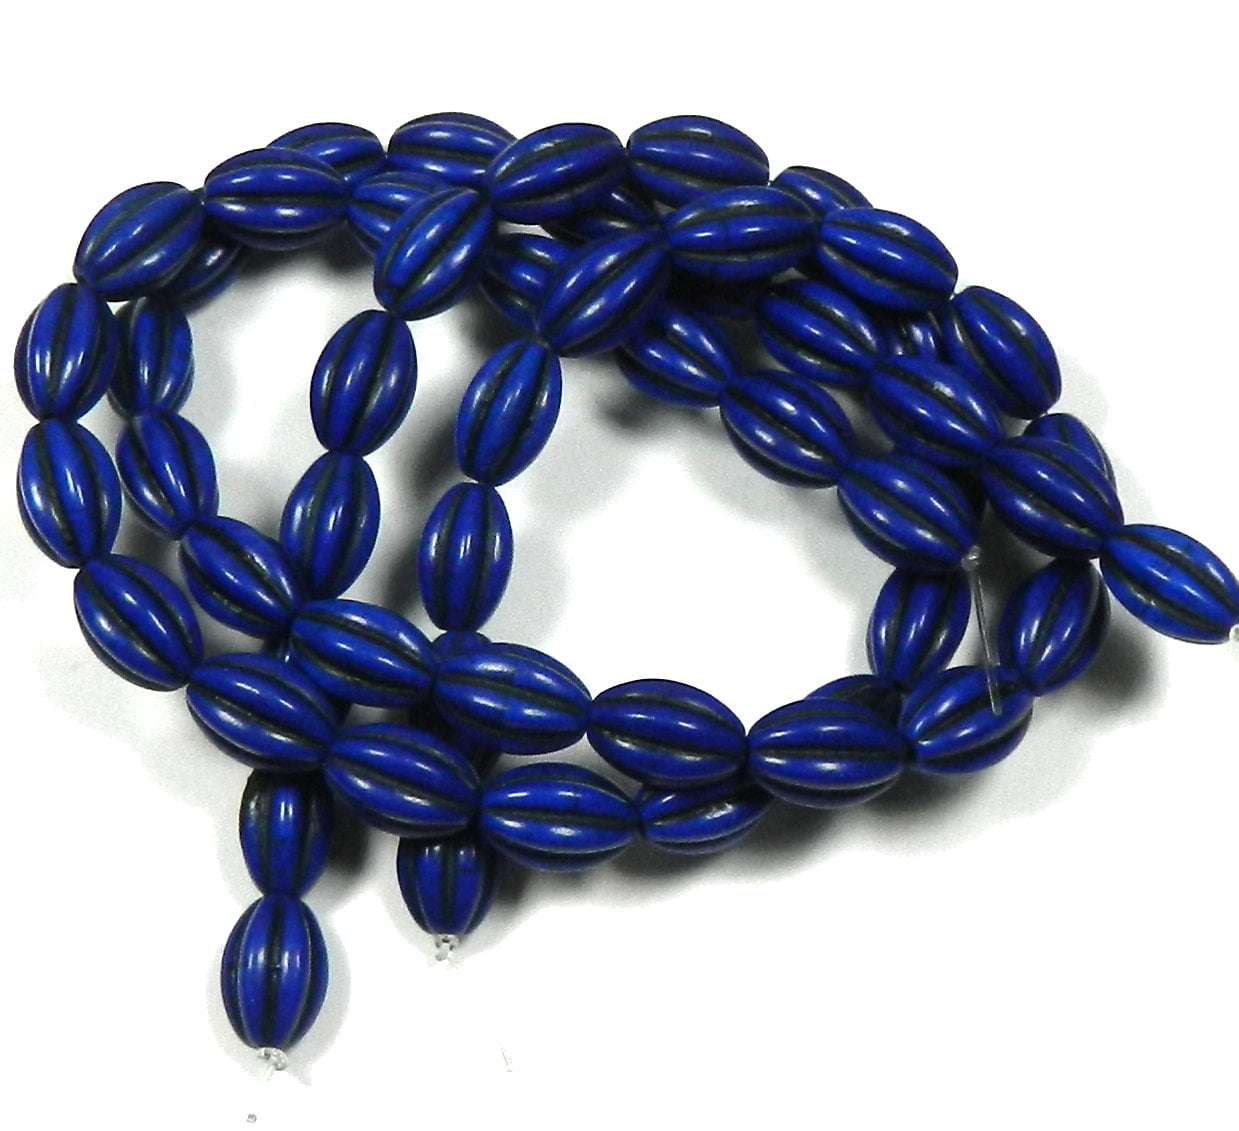 10x14mm Blue Lapis Lazuli Stone Fashion Jewlery Making Loose Beads Strand 15" 